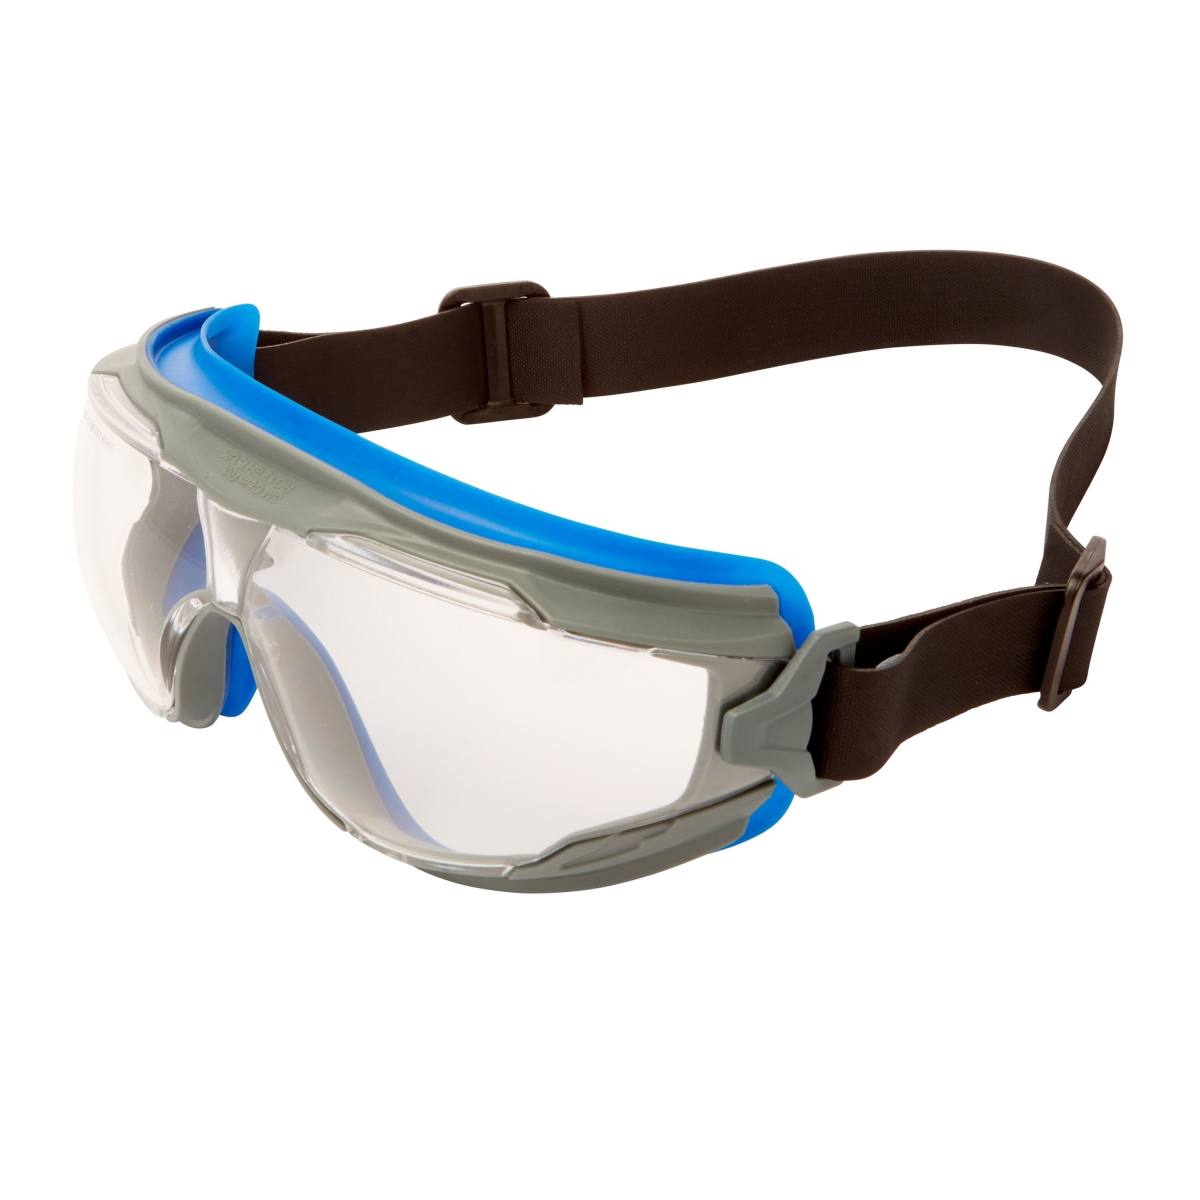 3M GoggleGear 500 Vollsichtbrille GG501NSGAF-BLU, autoklavierbar, blau-grauer Rahmen, schwarzes Neopren-Kopfband, klare Scheiben